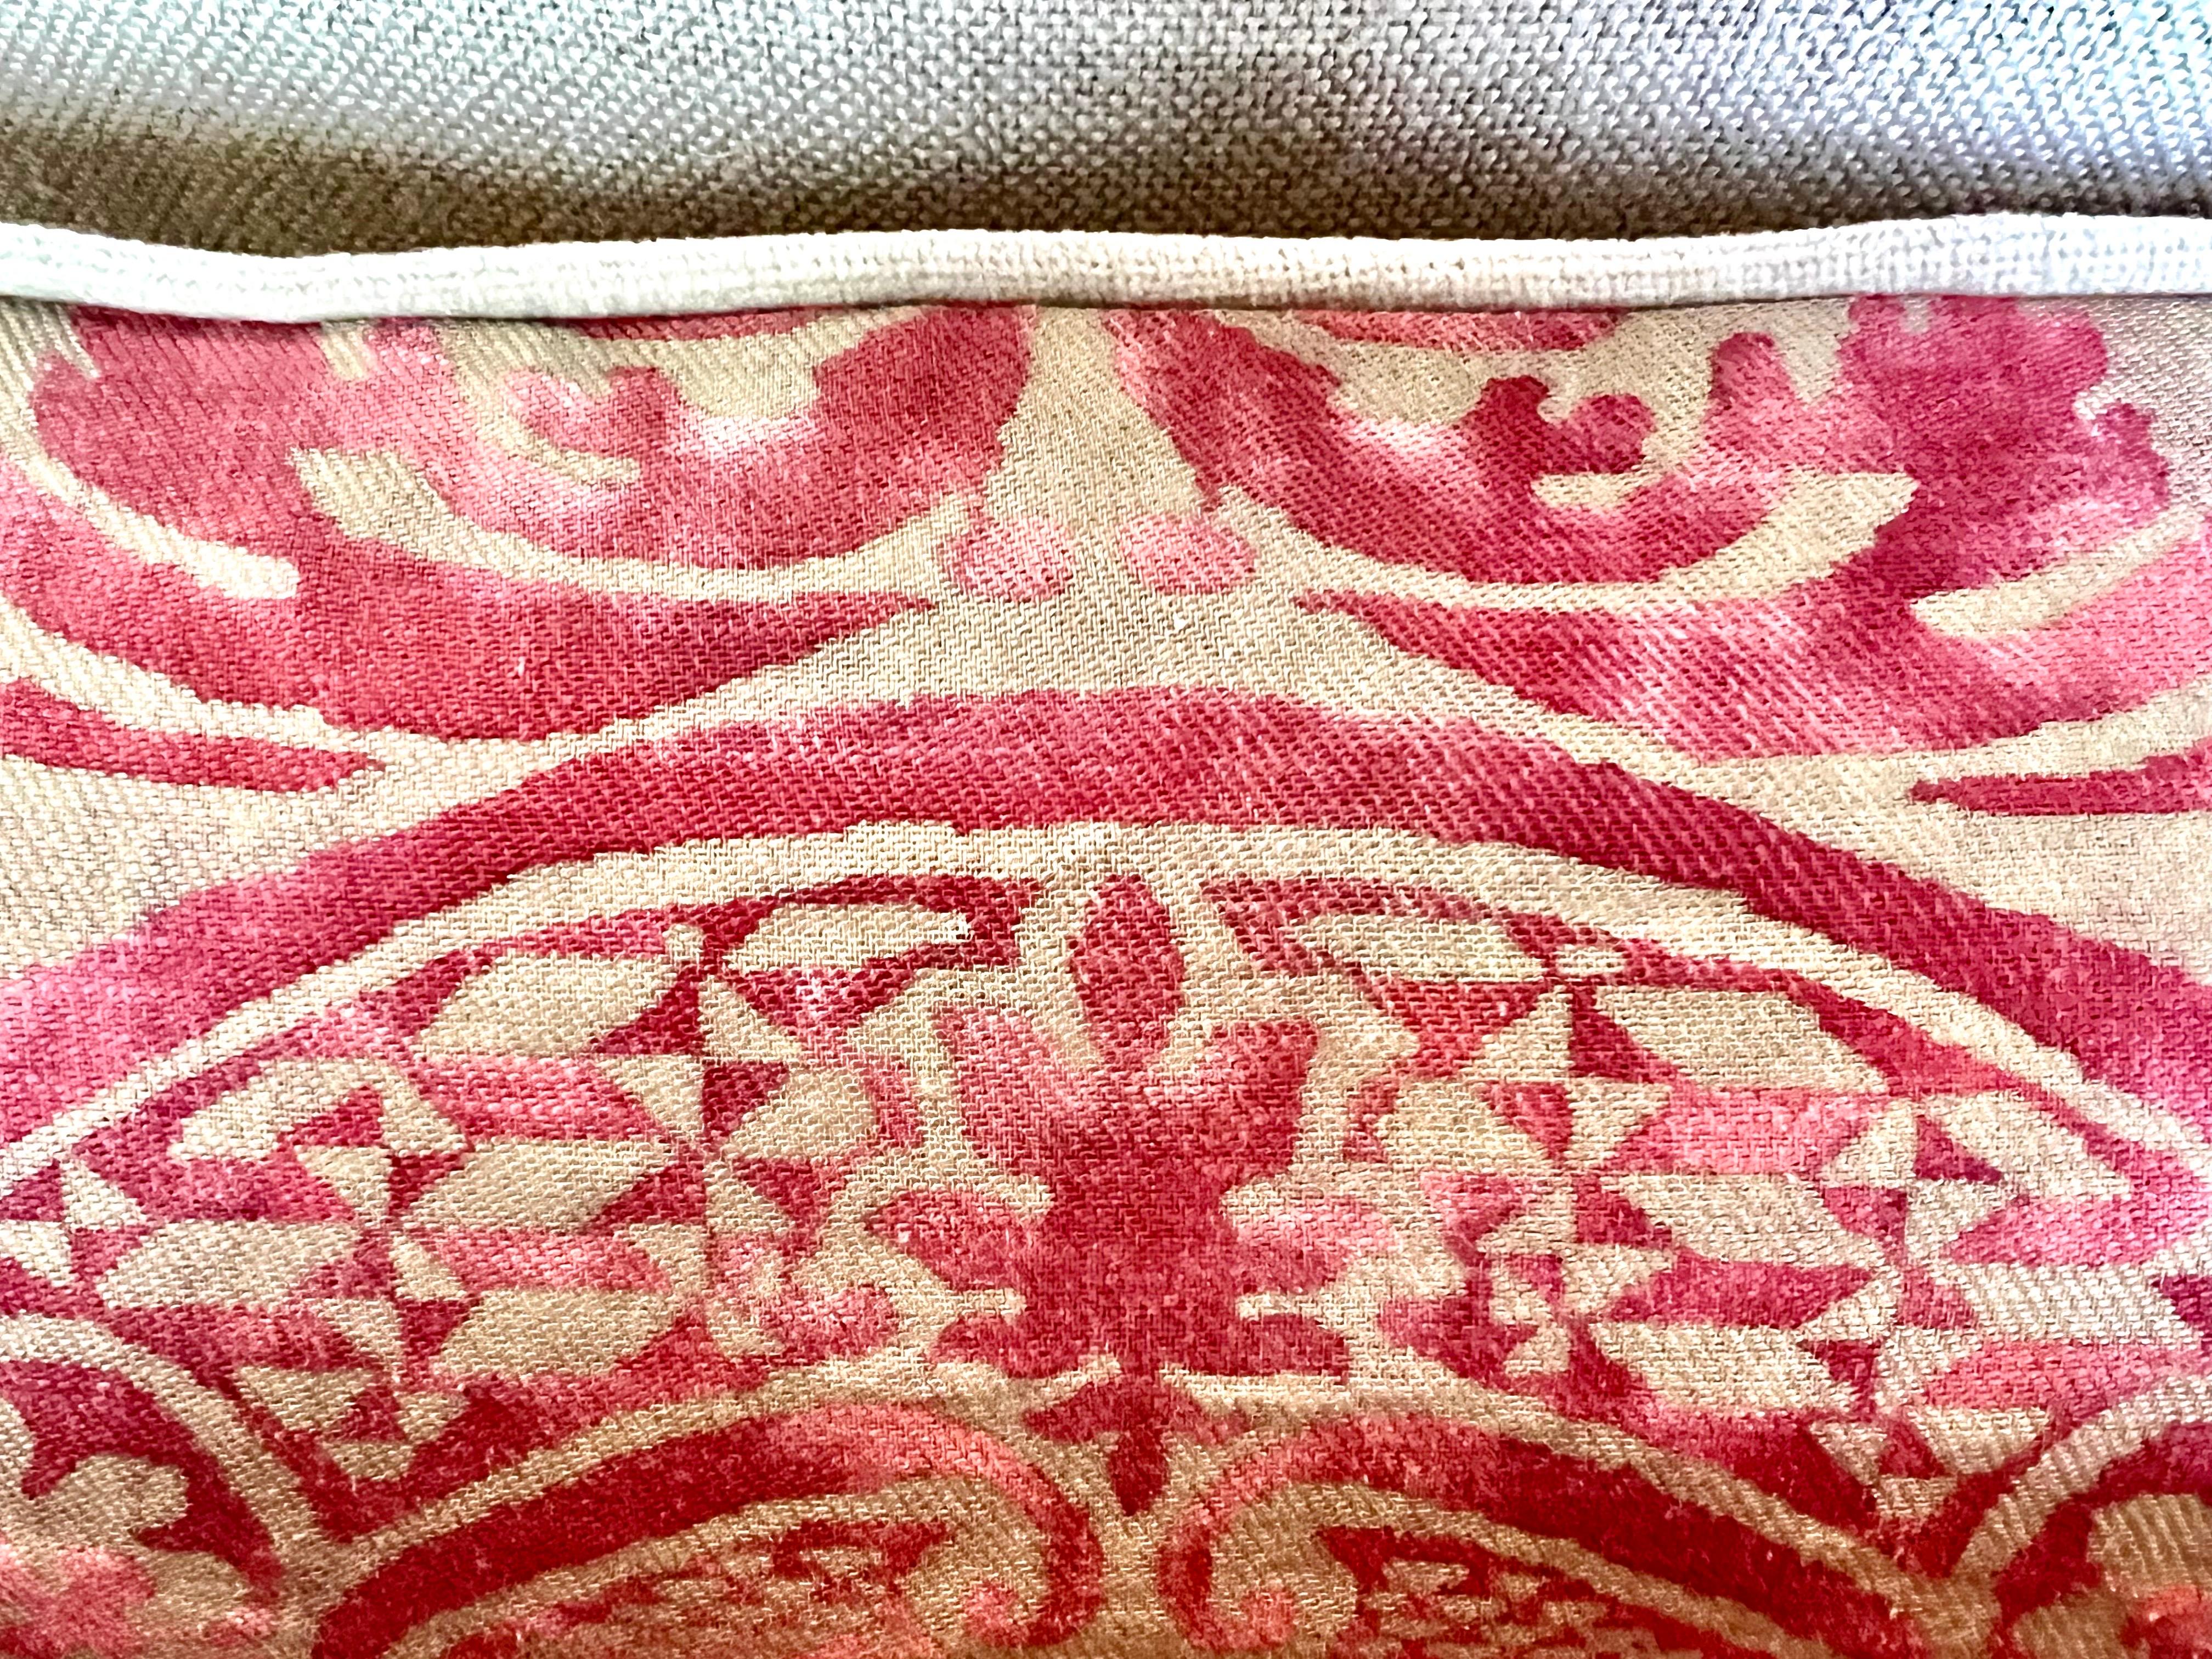 Italian Pair of Orsini Patterned Fortuny Textile Pillows w/ Velvet Backs